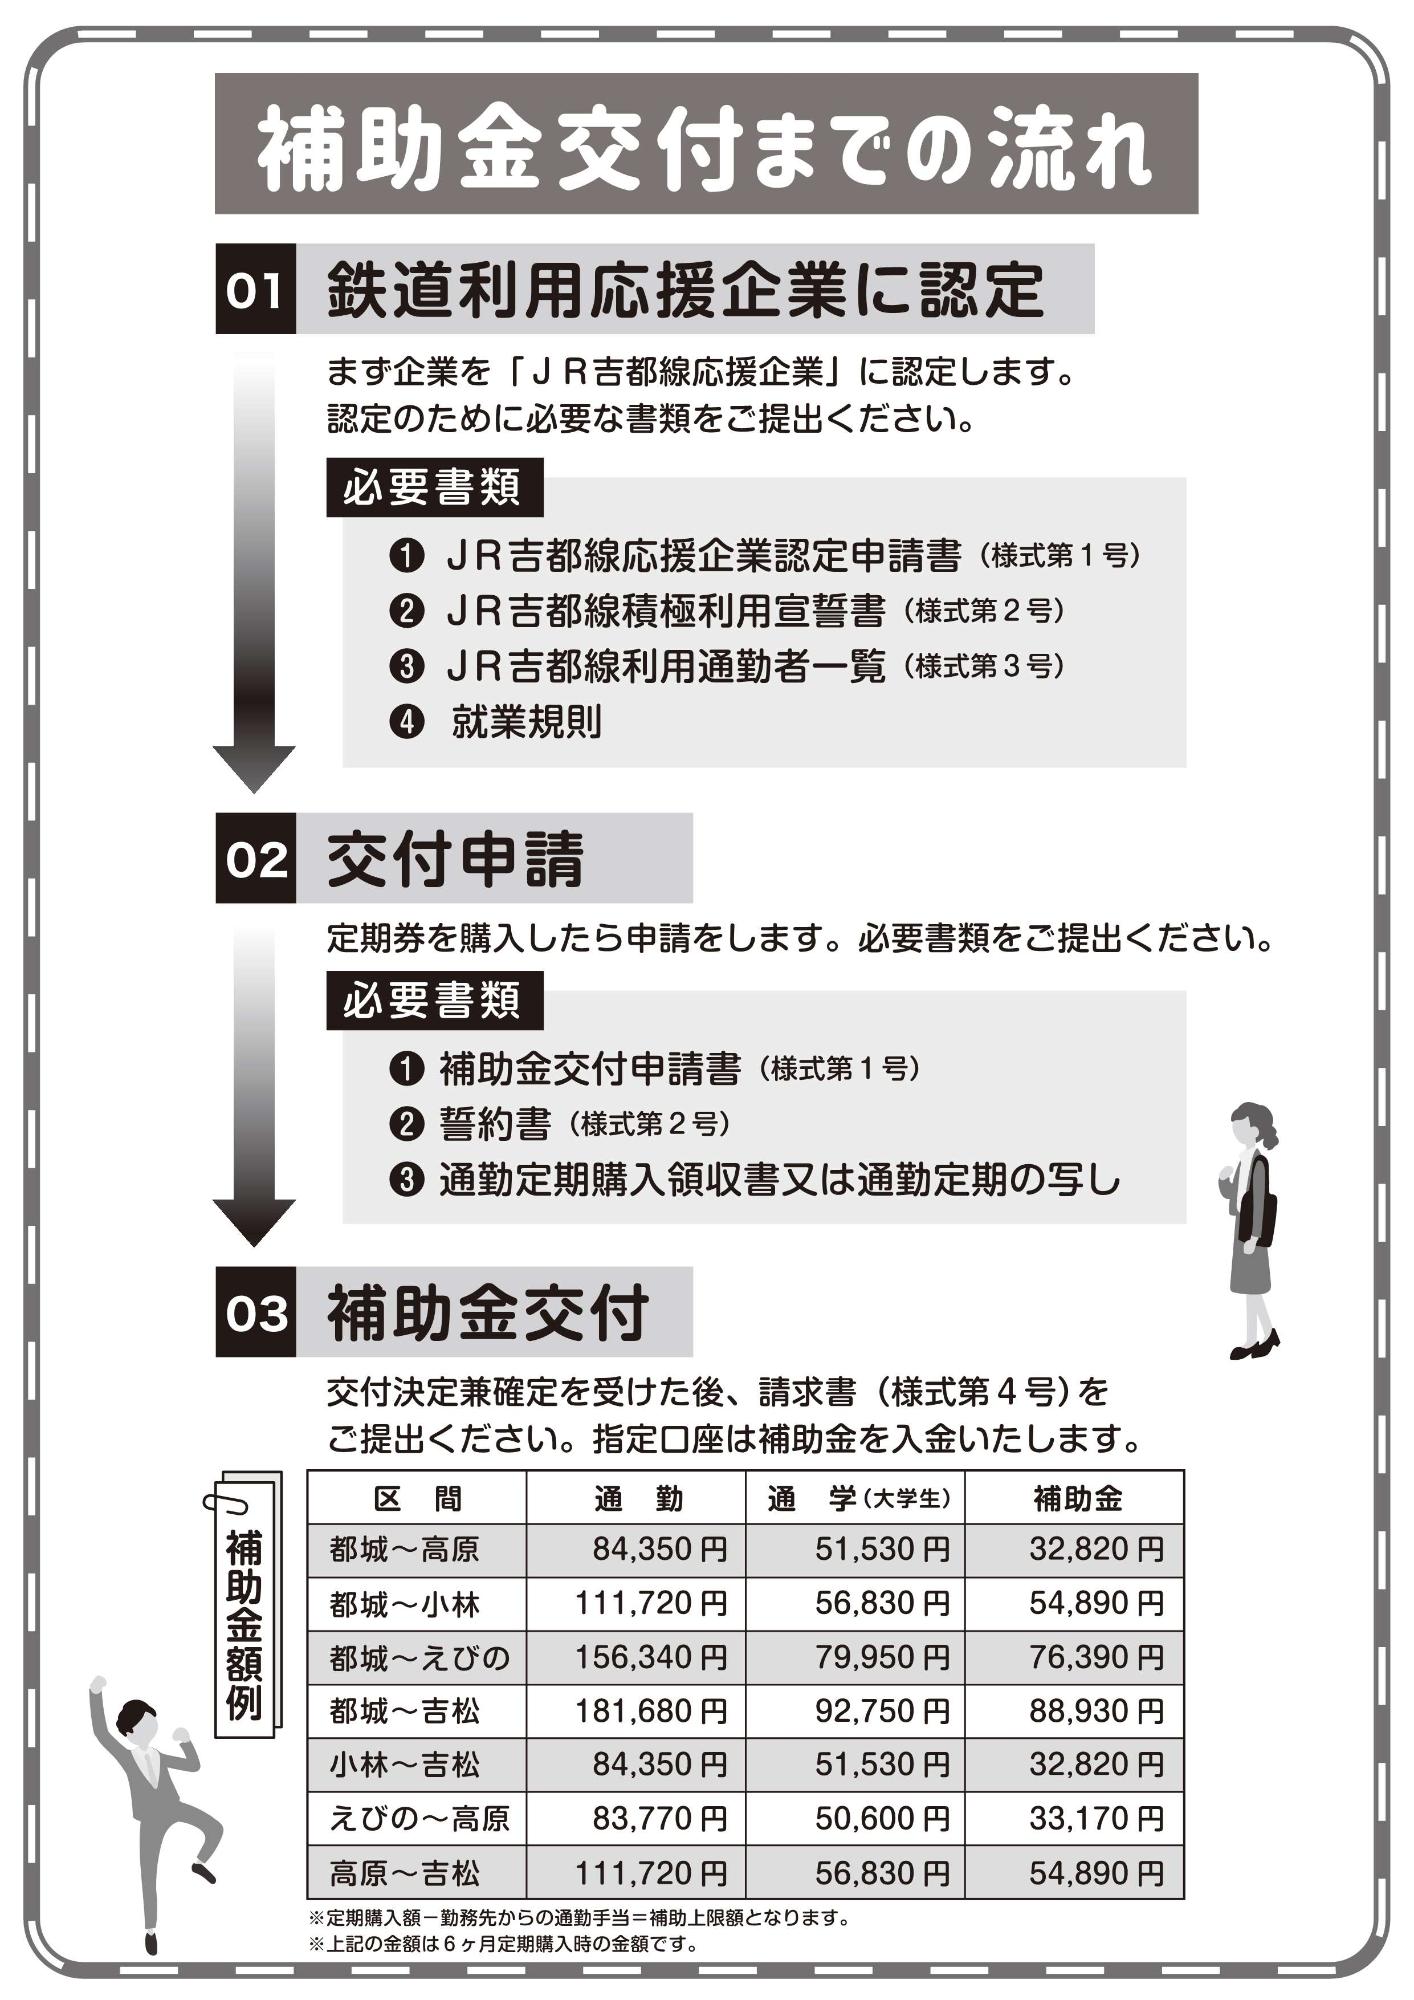 JR吉都線通勤定期購入補助金 交付までの流れ